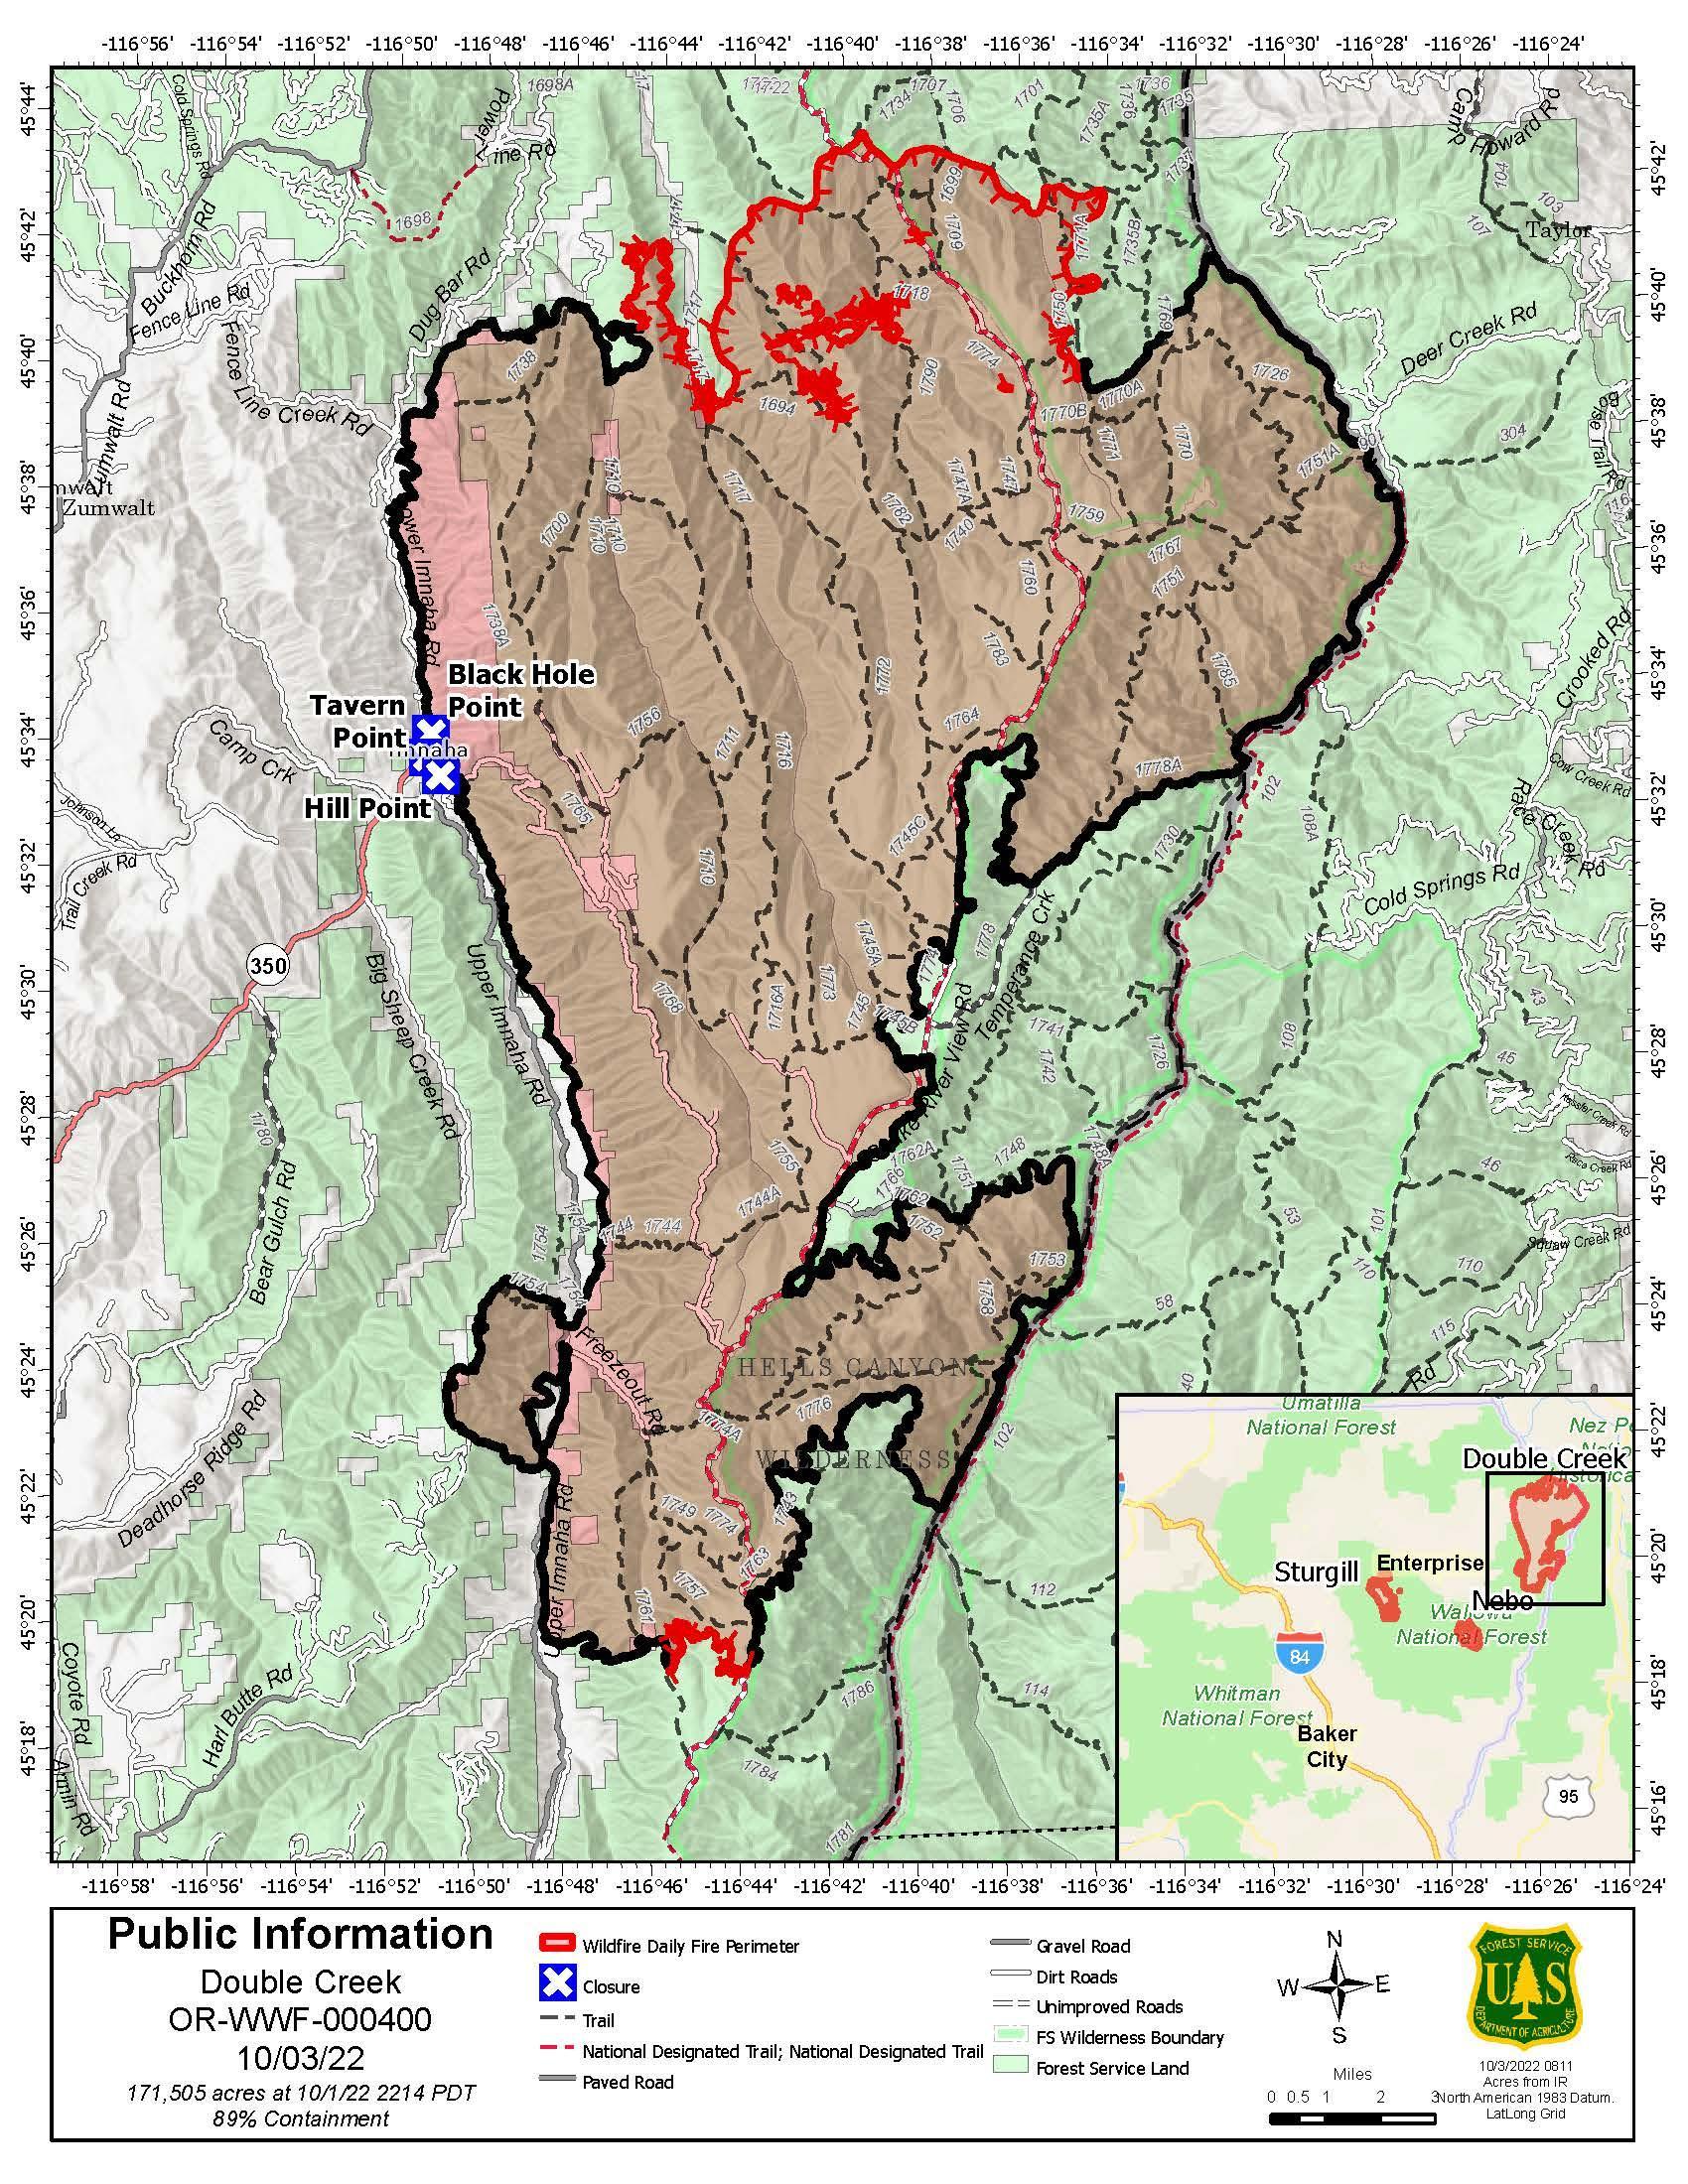 Double Creek Fire Map - 20221003